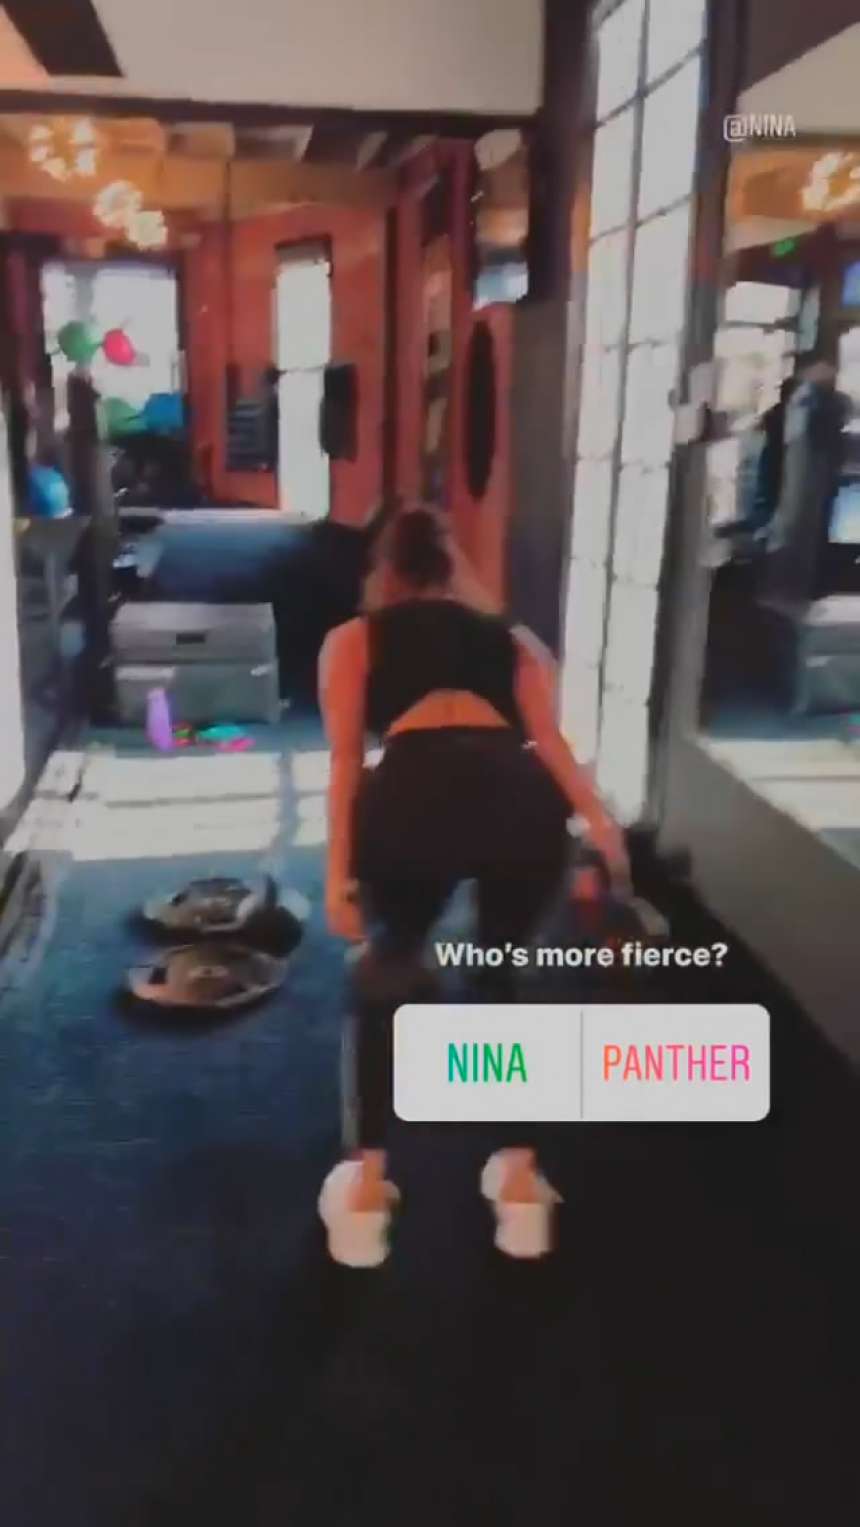 Nina Dobrev Working out â€“ Instagram